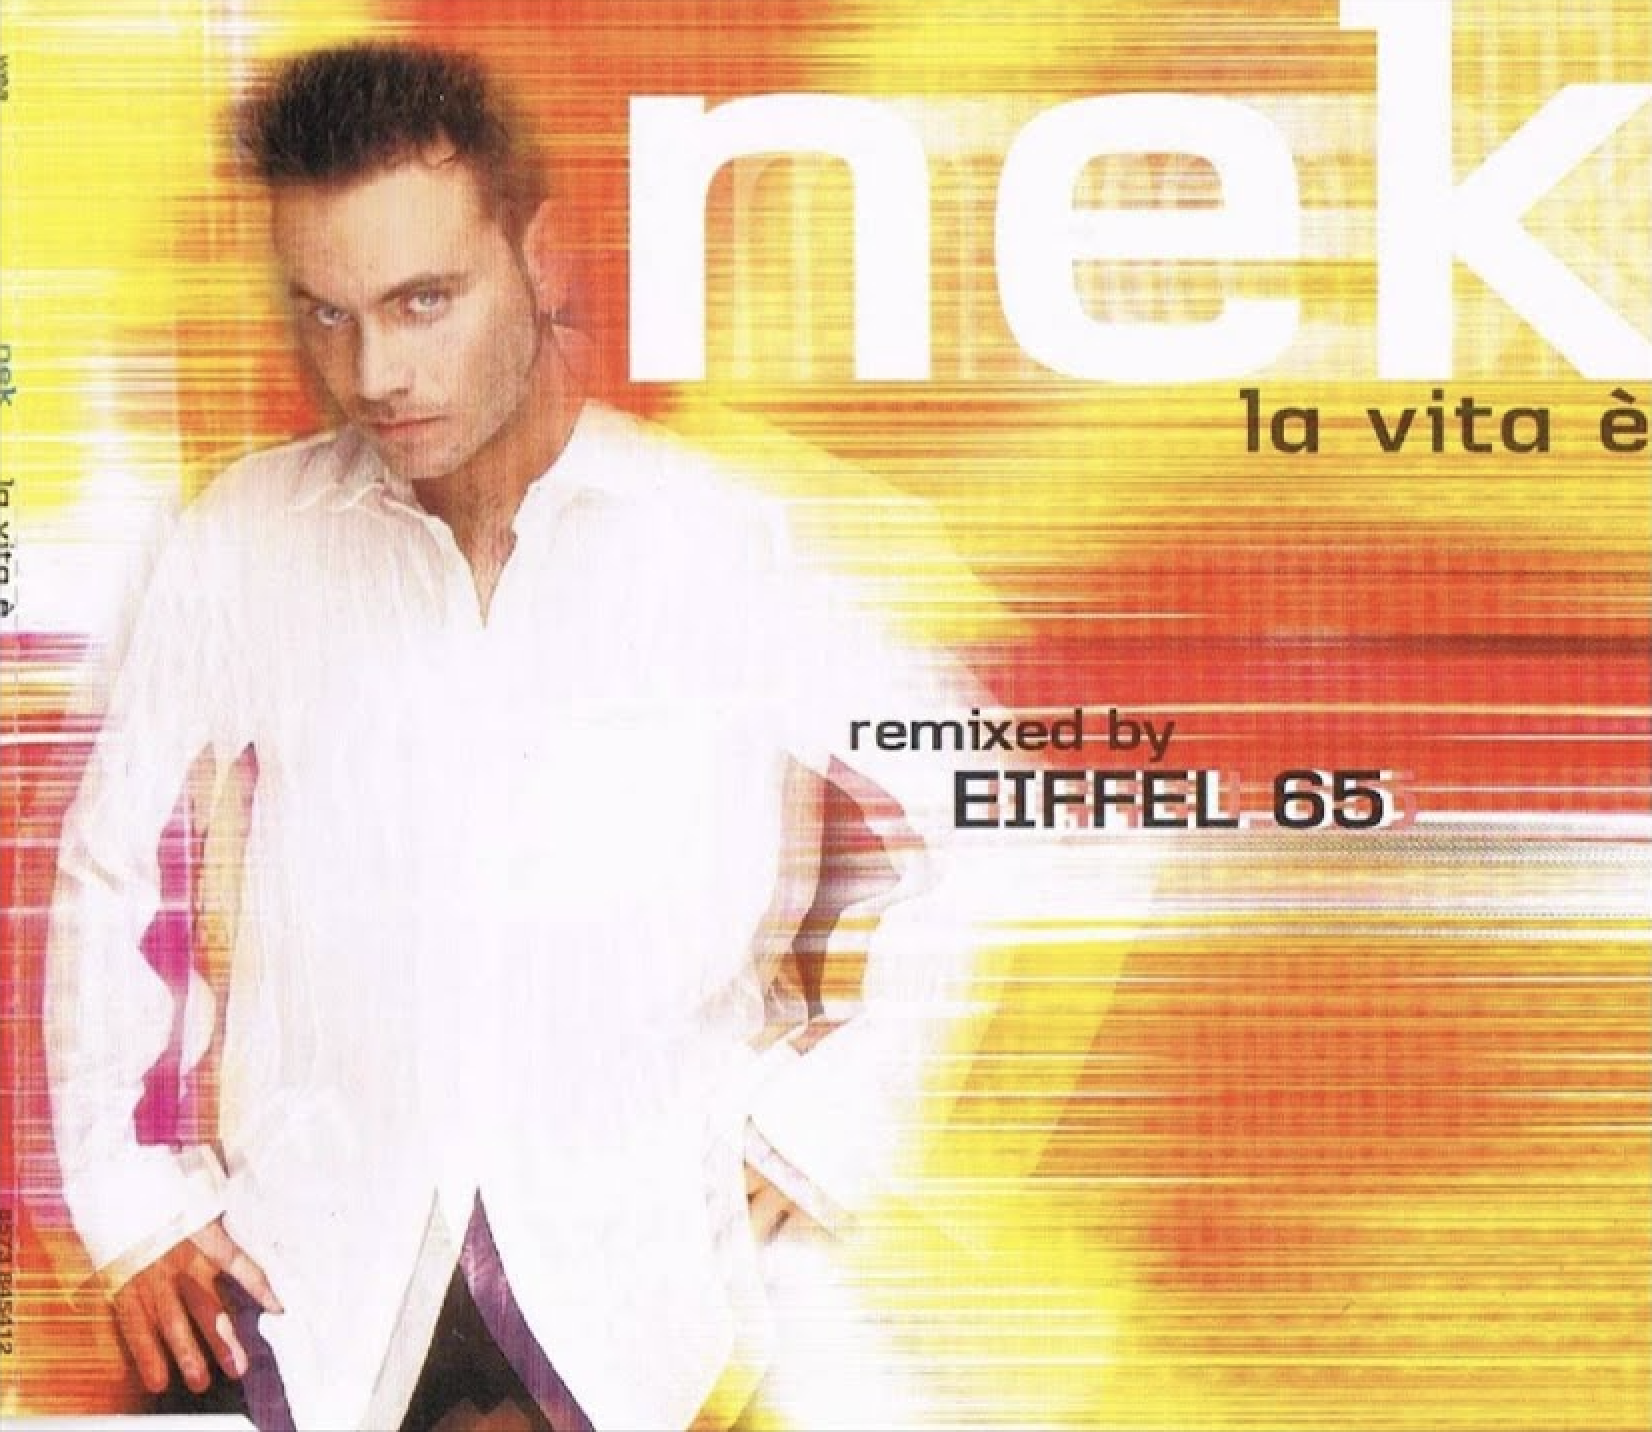 Nek La Vita È (Eiffel 65 Remix) cover artwork